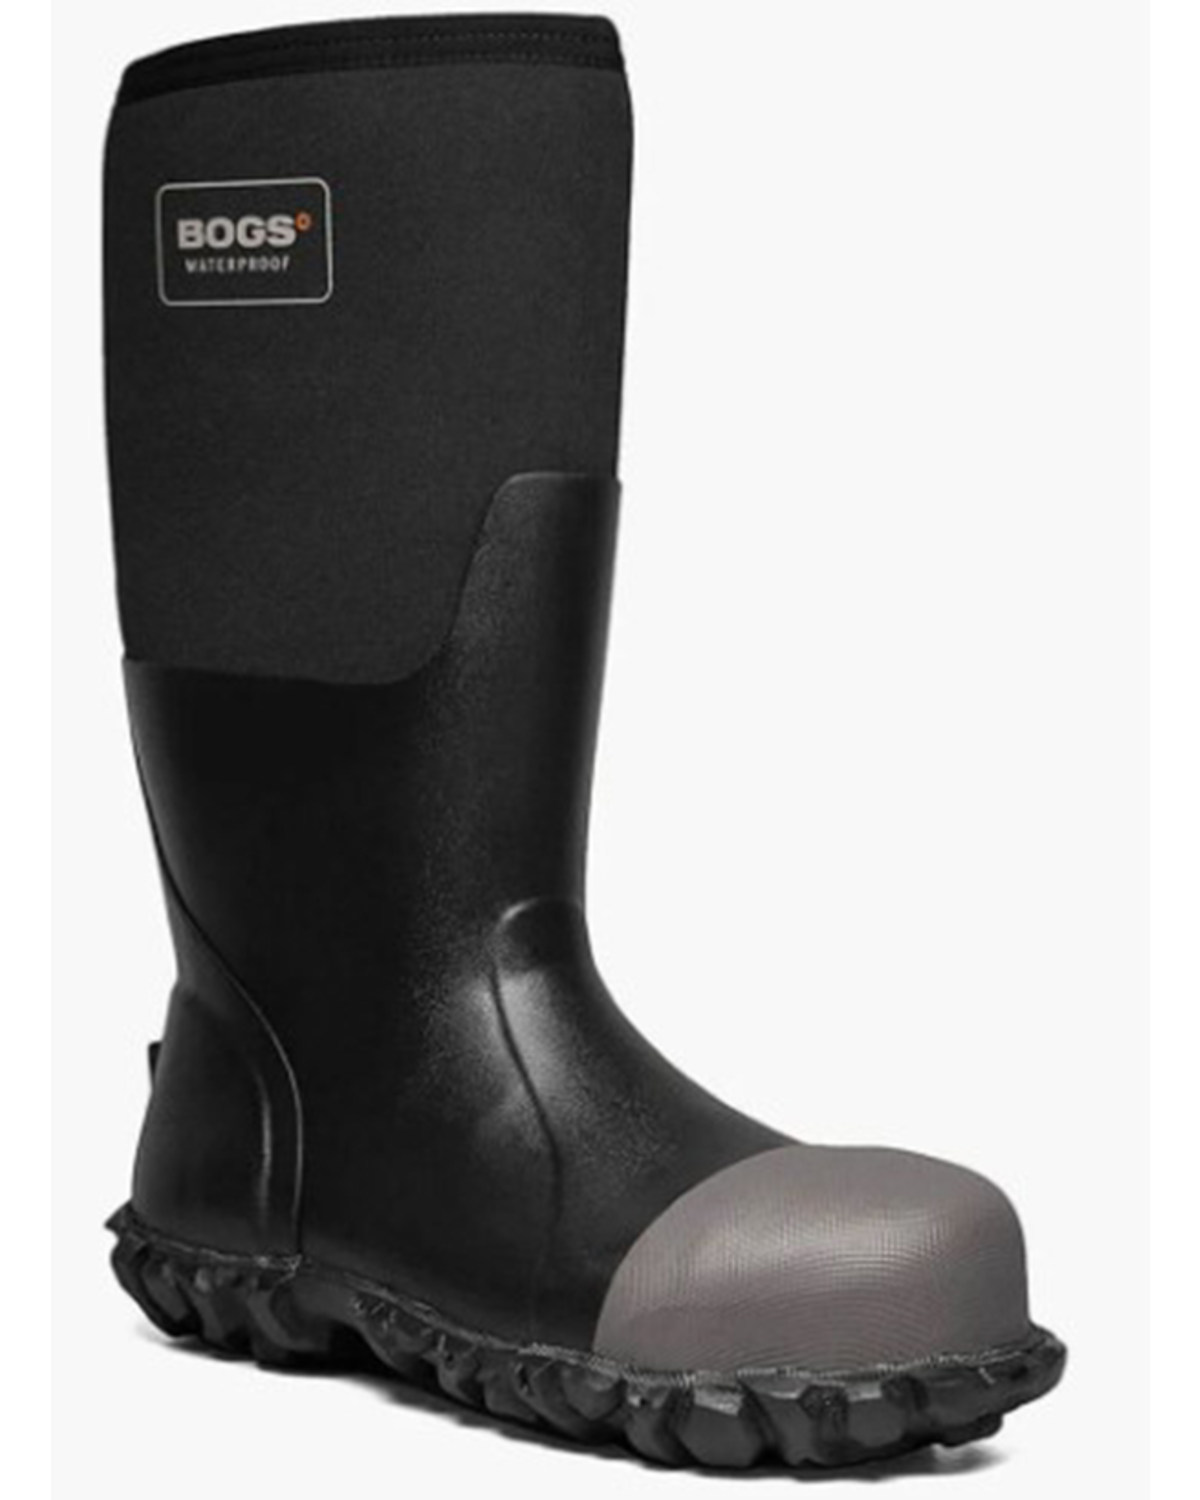 Bogs Men's Mesa Work Boots - Steel Toe